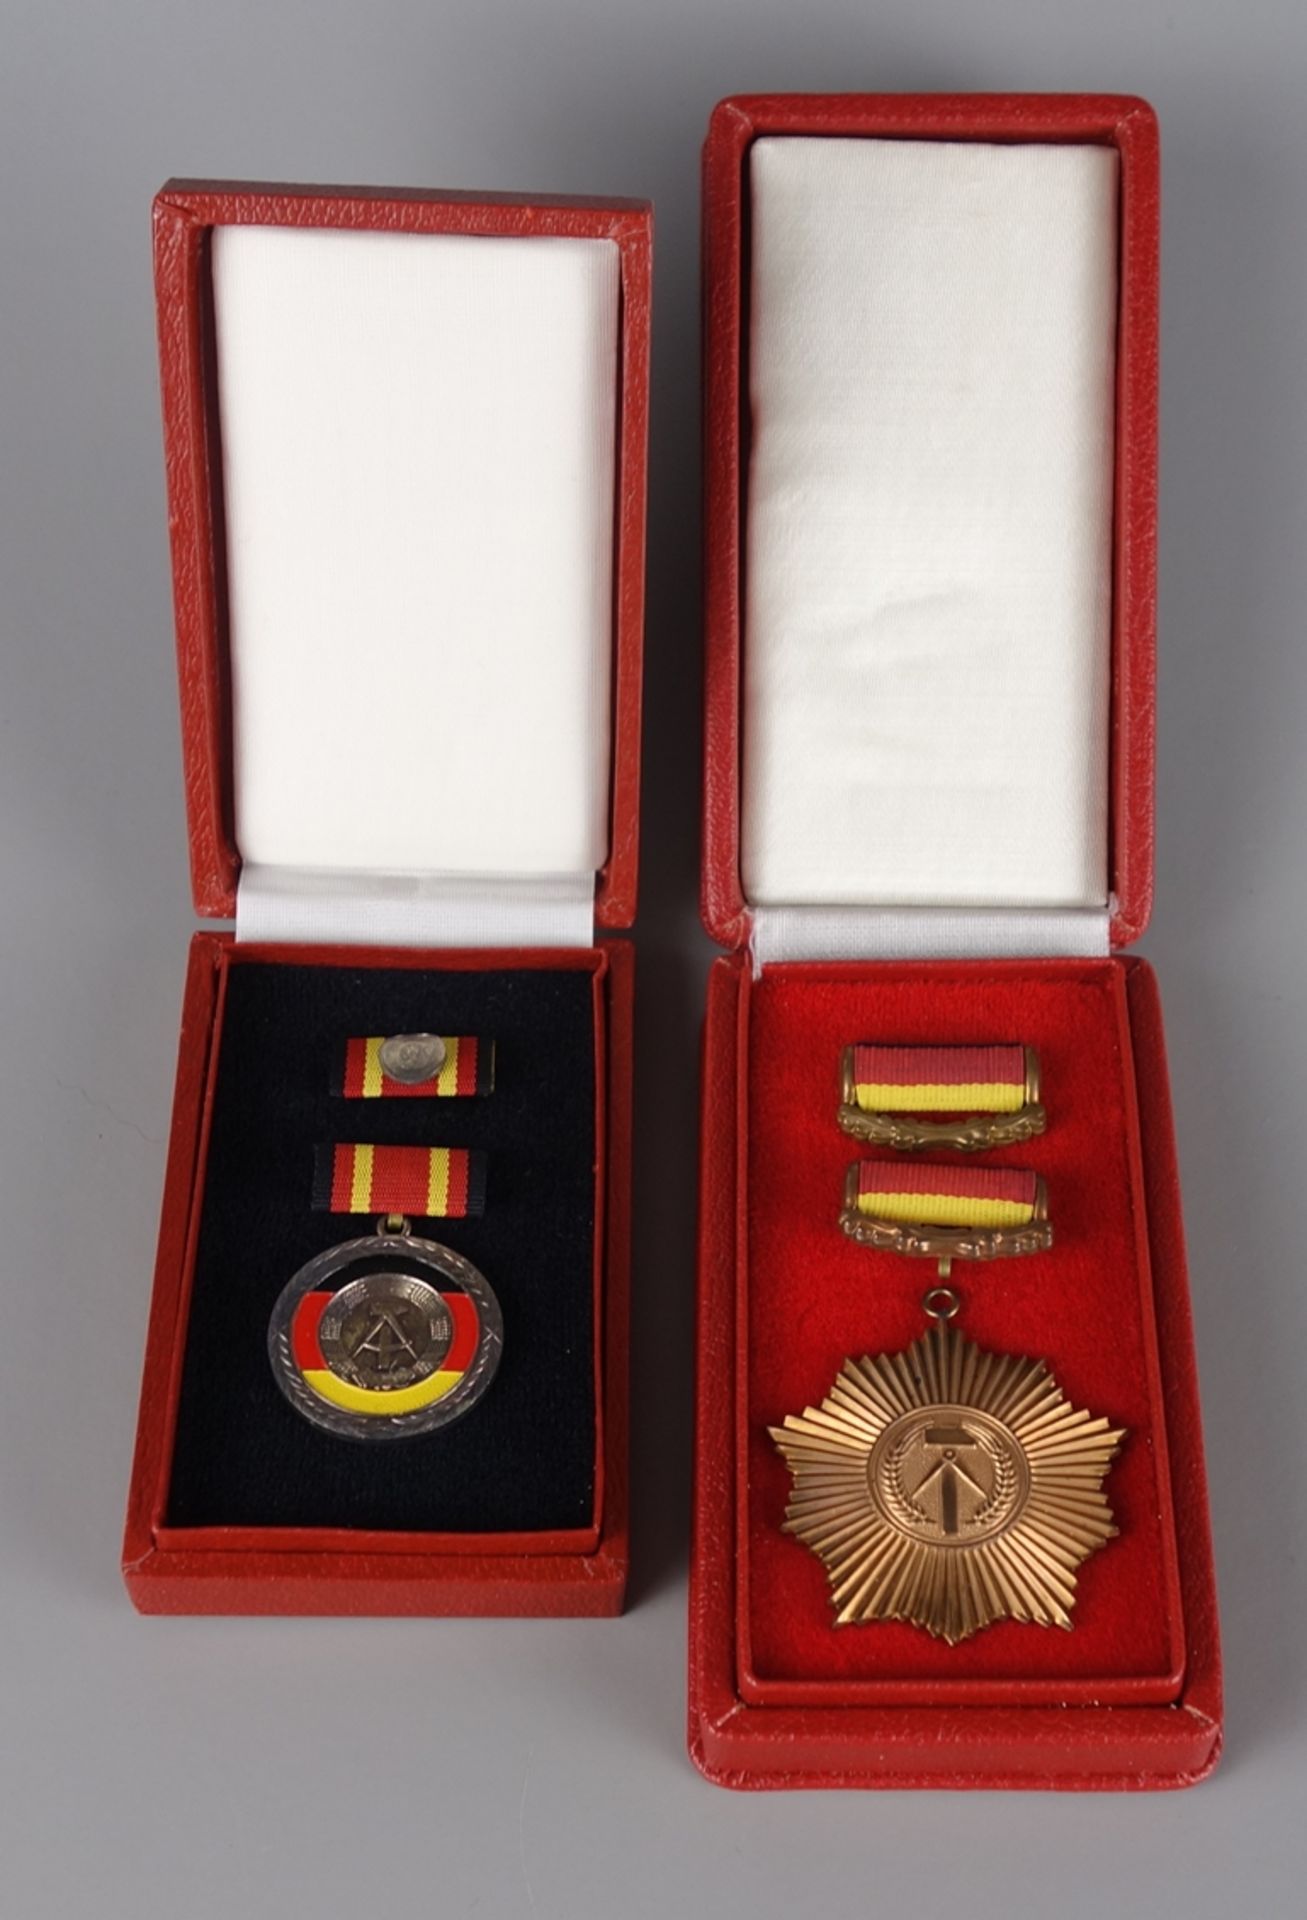 Vaterländischer Verdienstorden in Bronze und Verdienstmedaille der DDR, mit Urk - Bild 3 aus 3